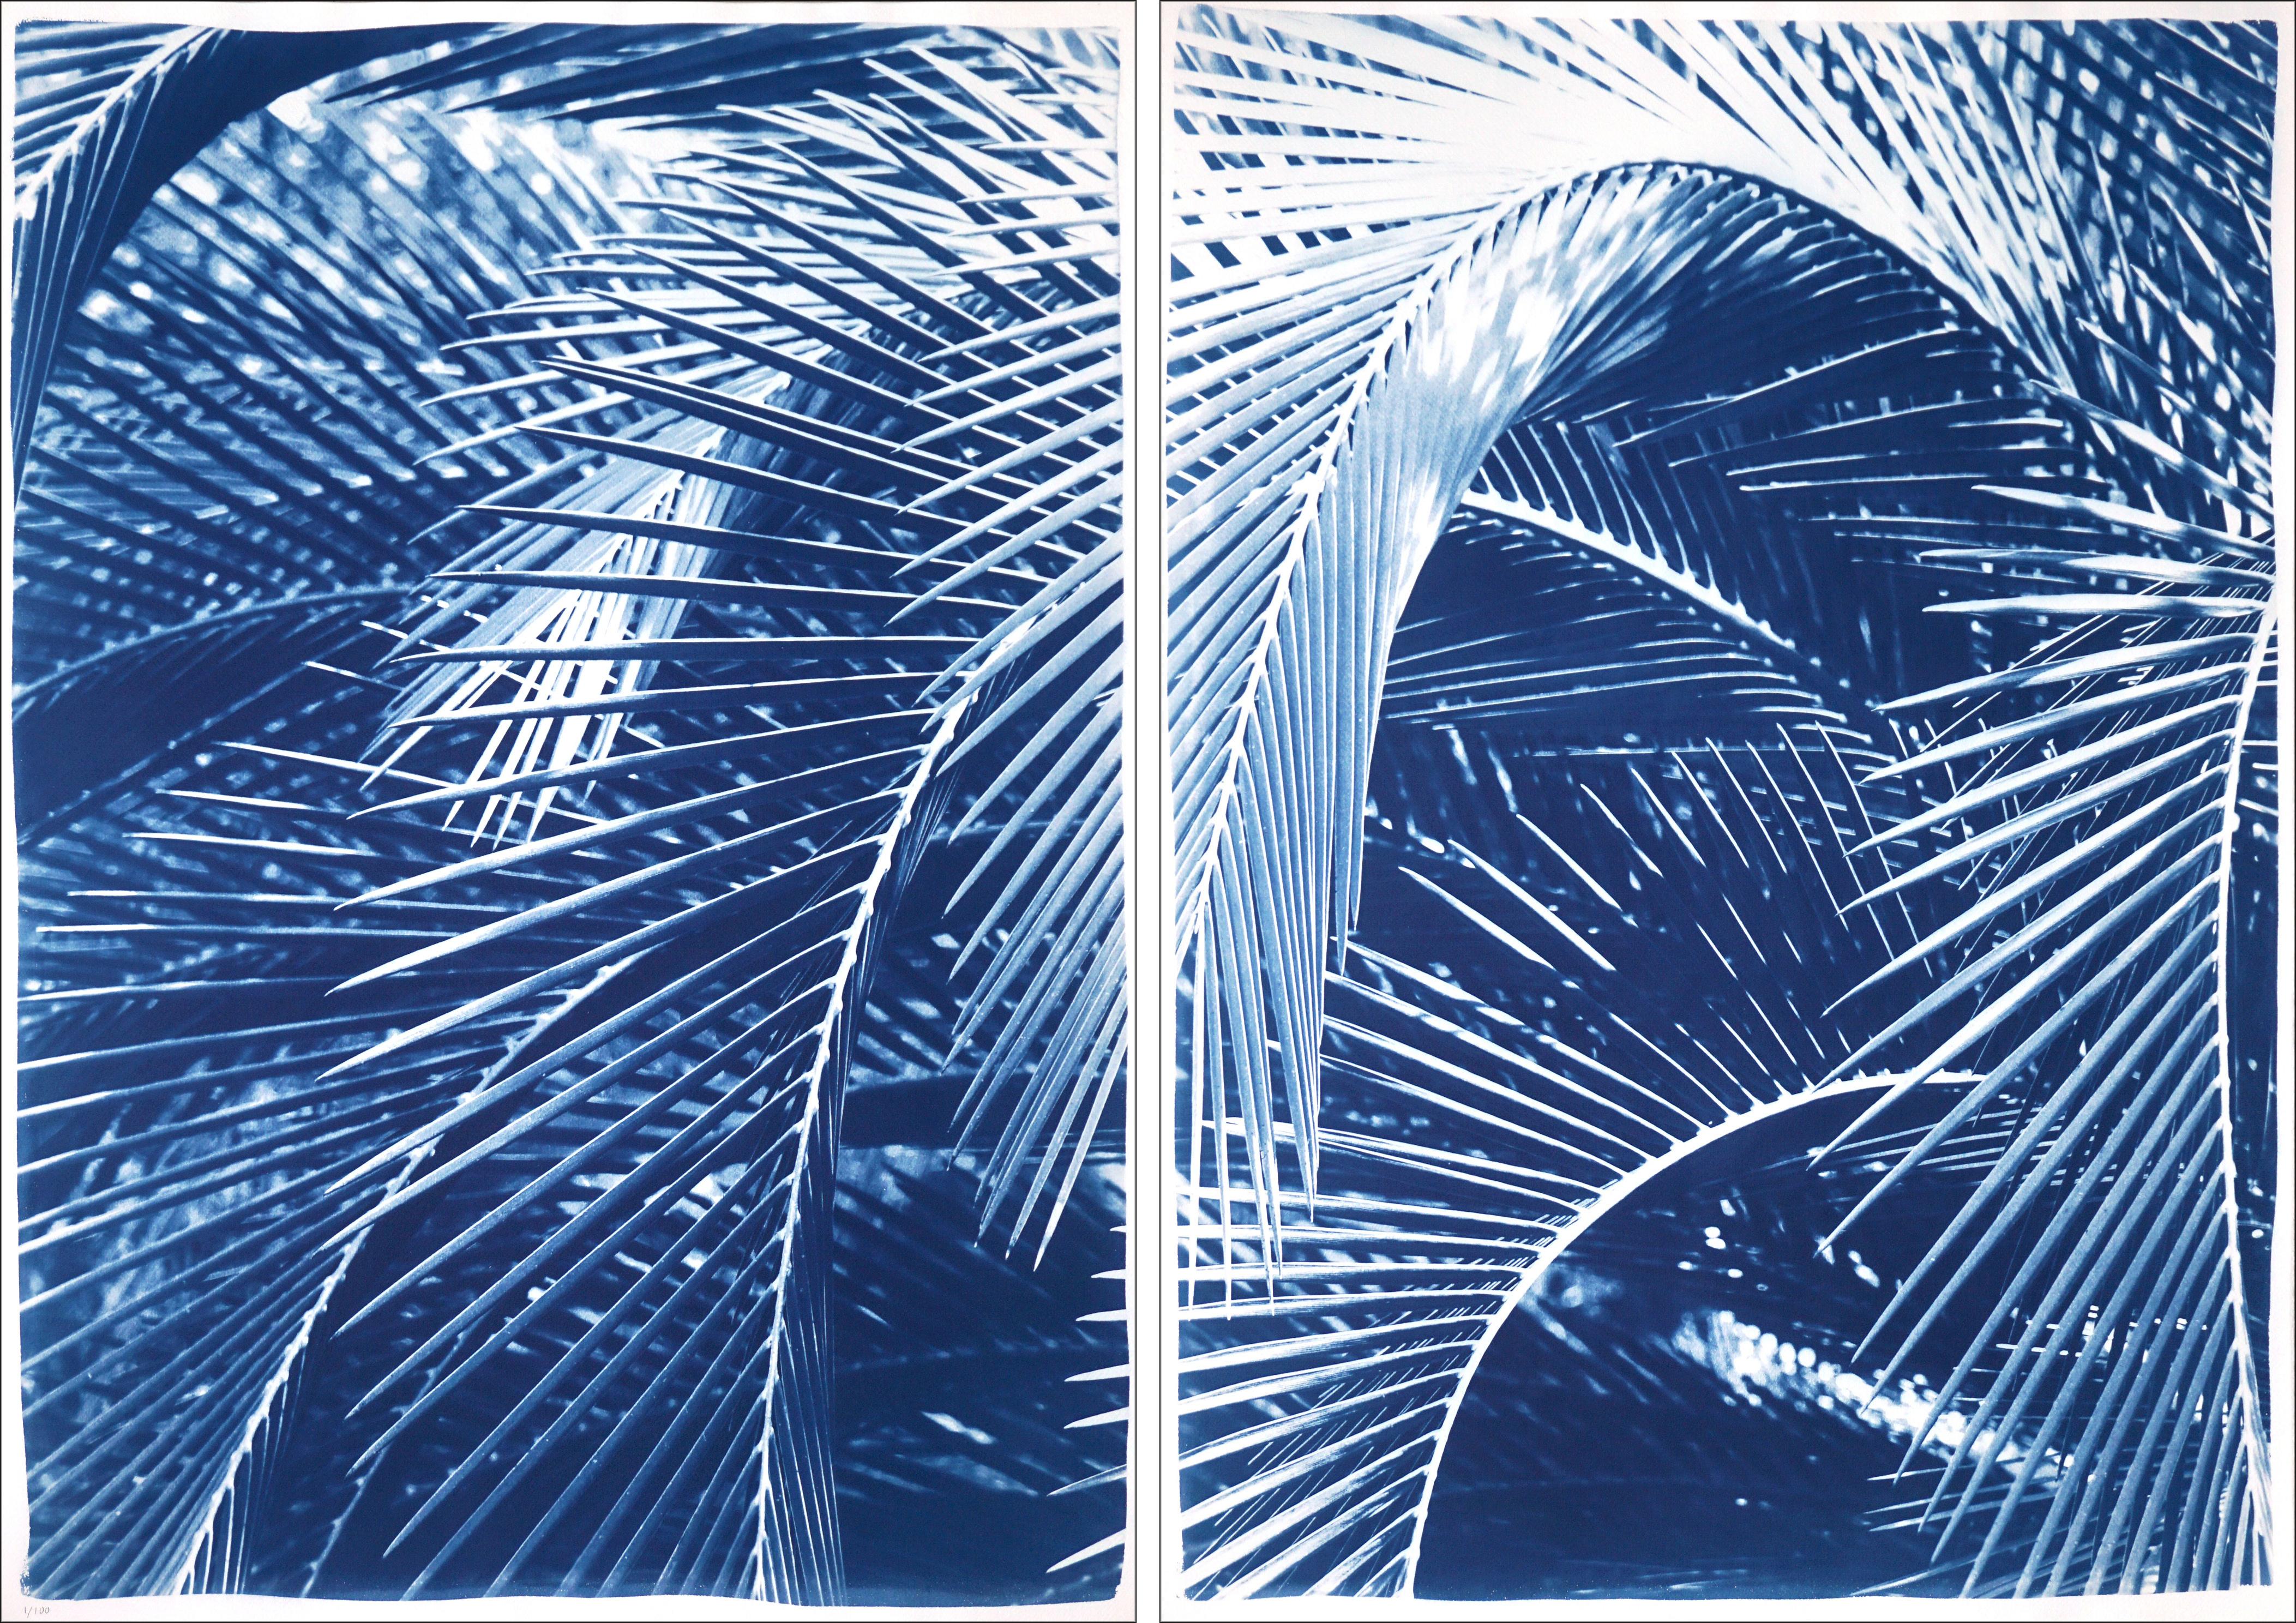 Bushes de palmiers luxuriants, diptyque botanique, nature morte dans des tons bleus, style tropical